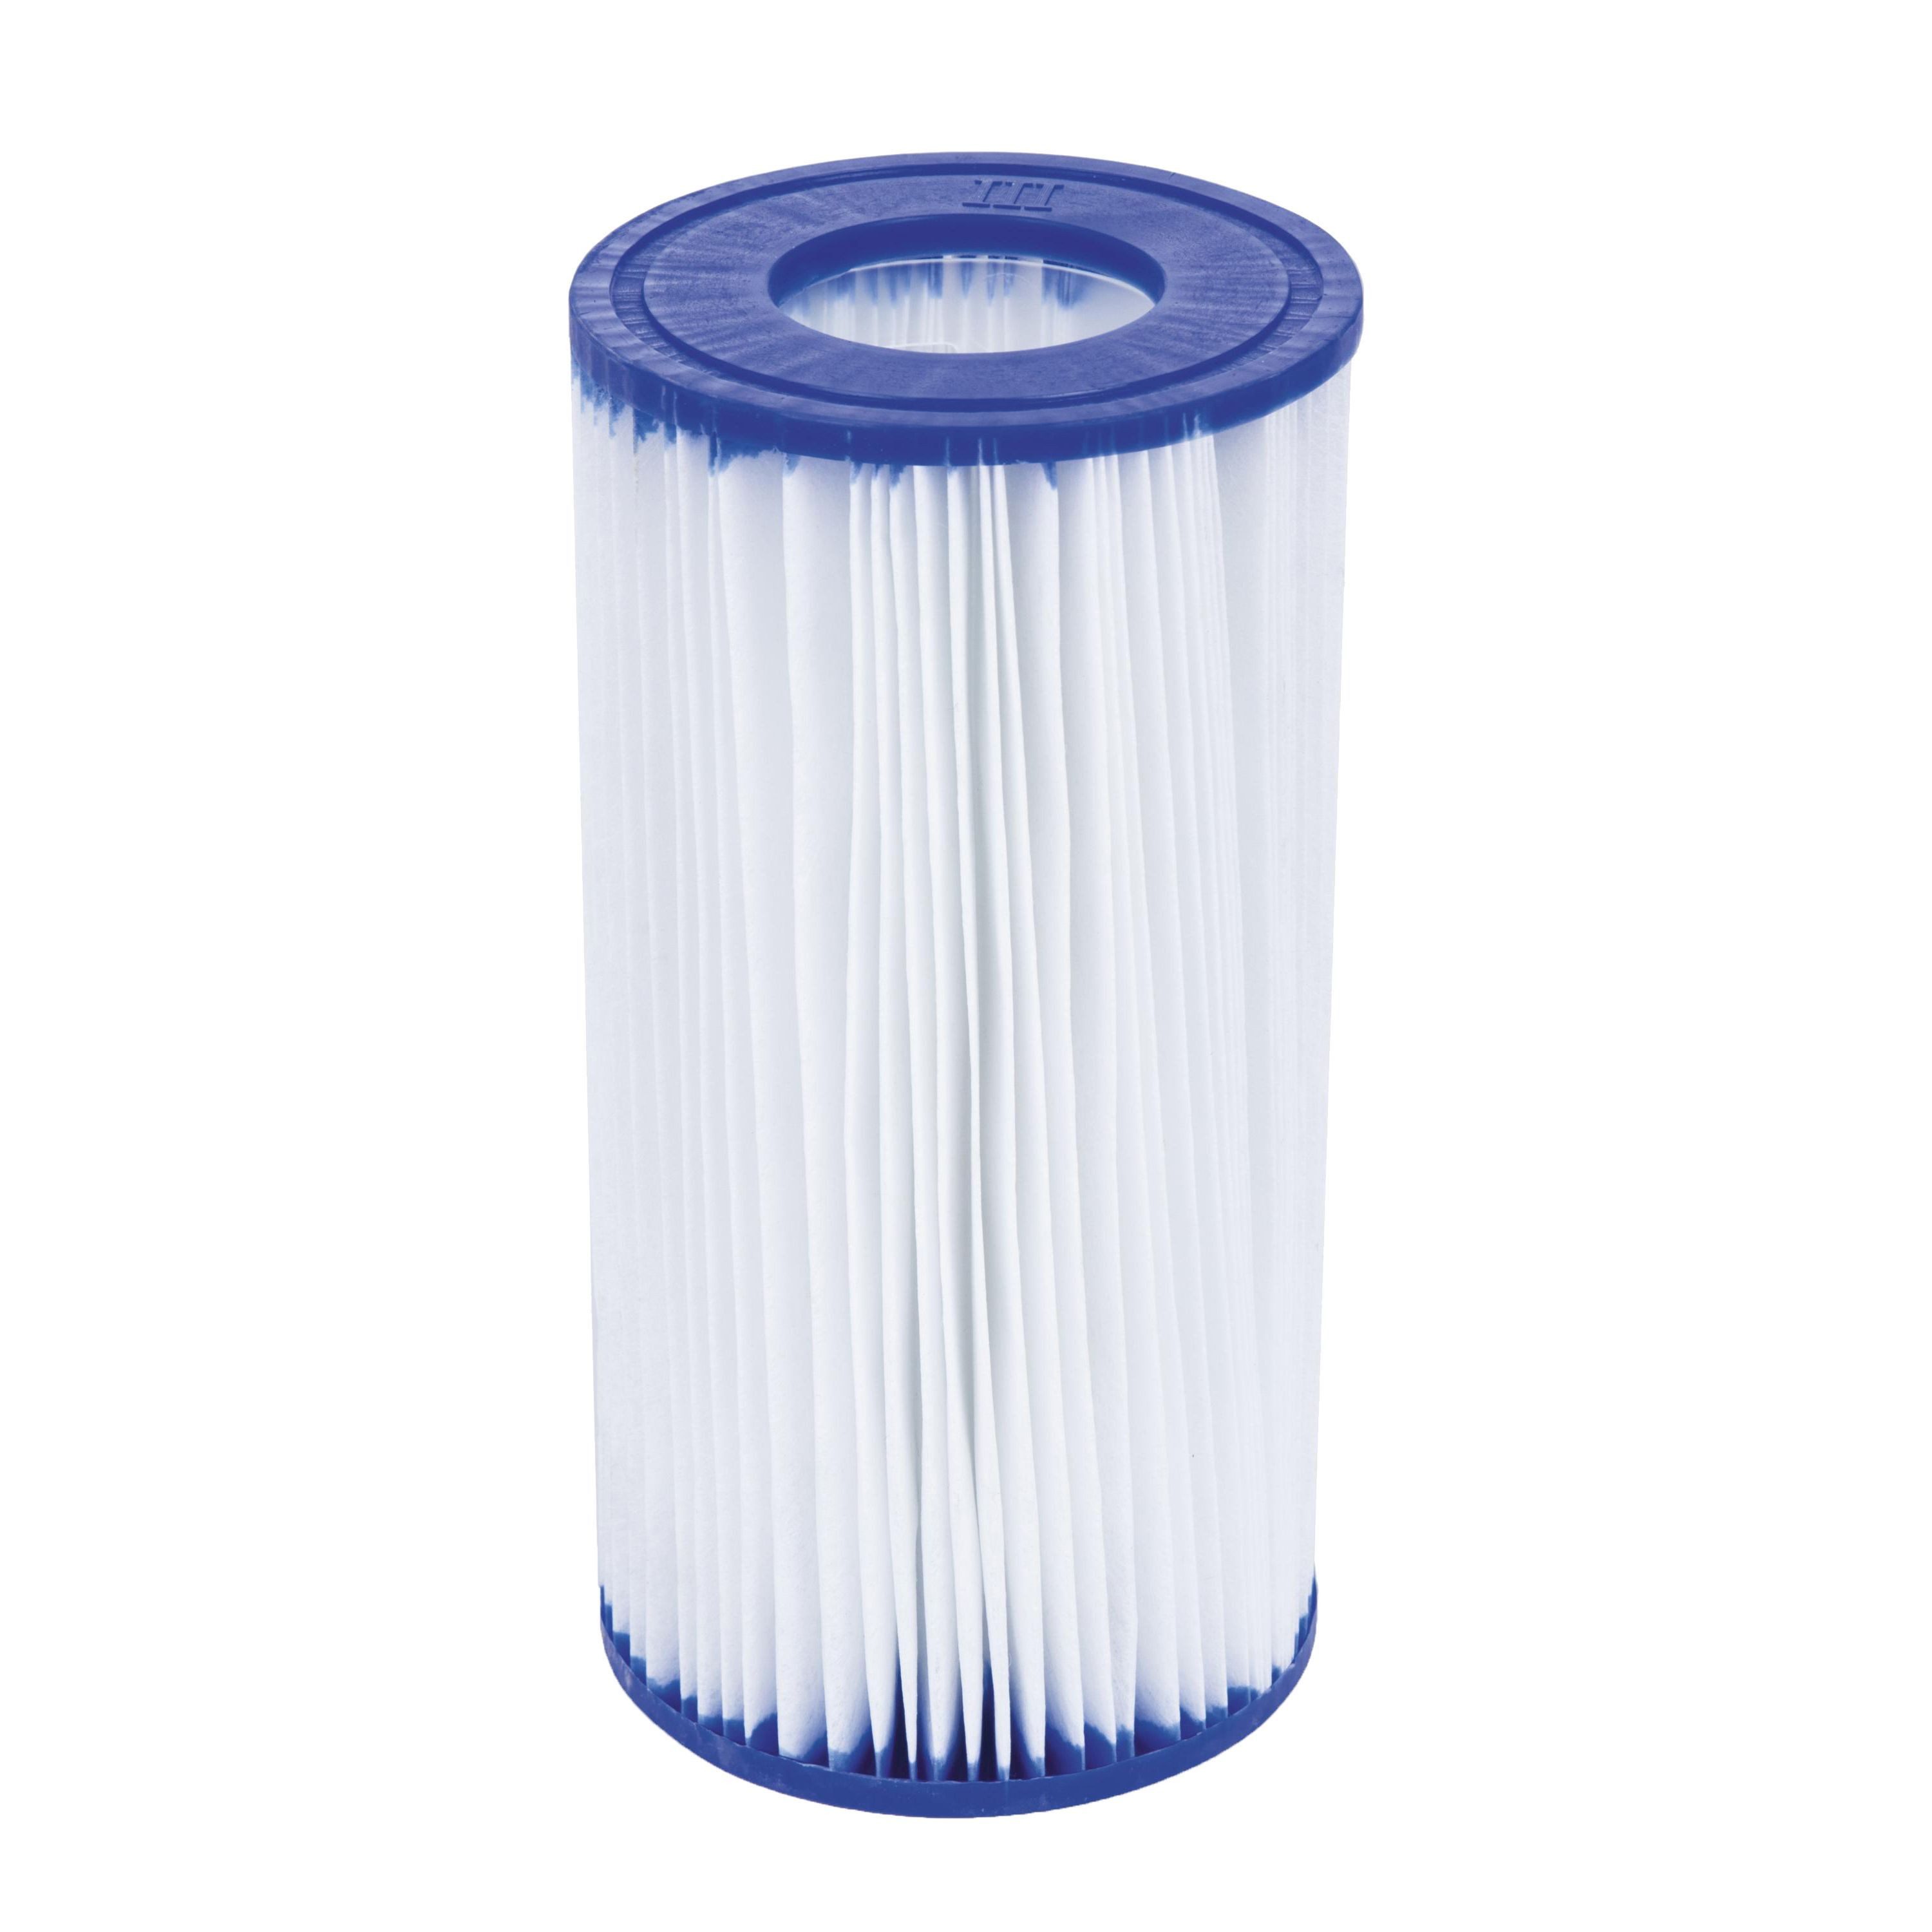 Bestway Pool-Filterkartusche Flowclear™ Gr. III, 10,6 x 20,3 cm, Zubehör für Kartuschen-Filterpumpen, Feine Lamellenstruktur